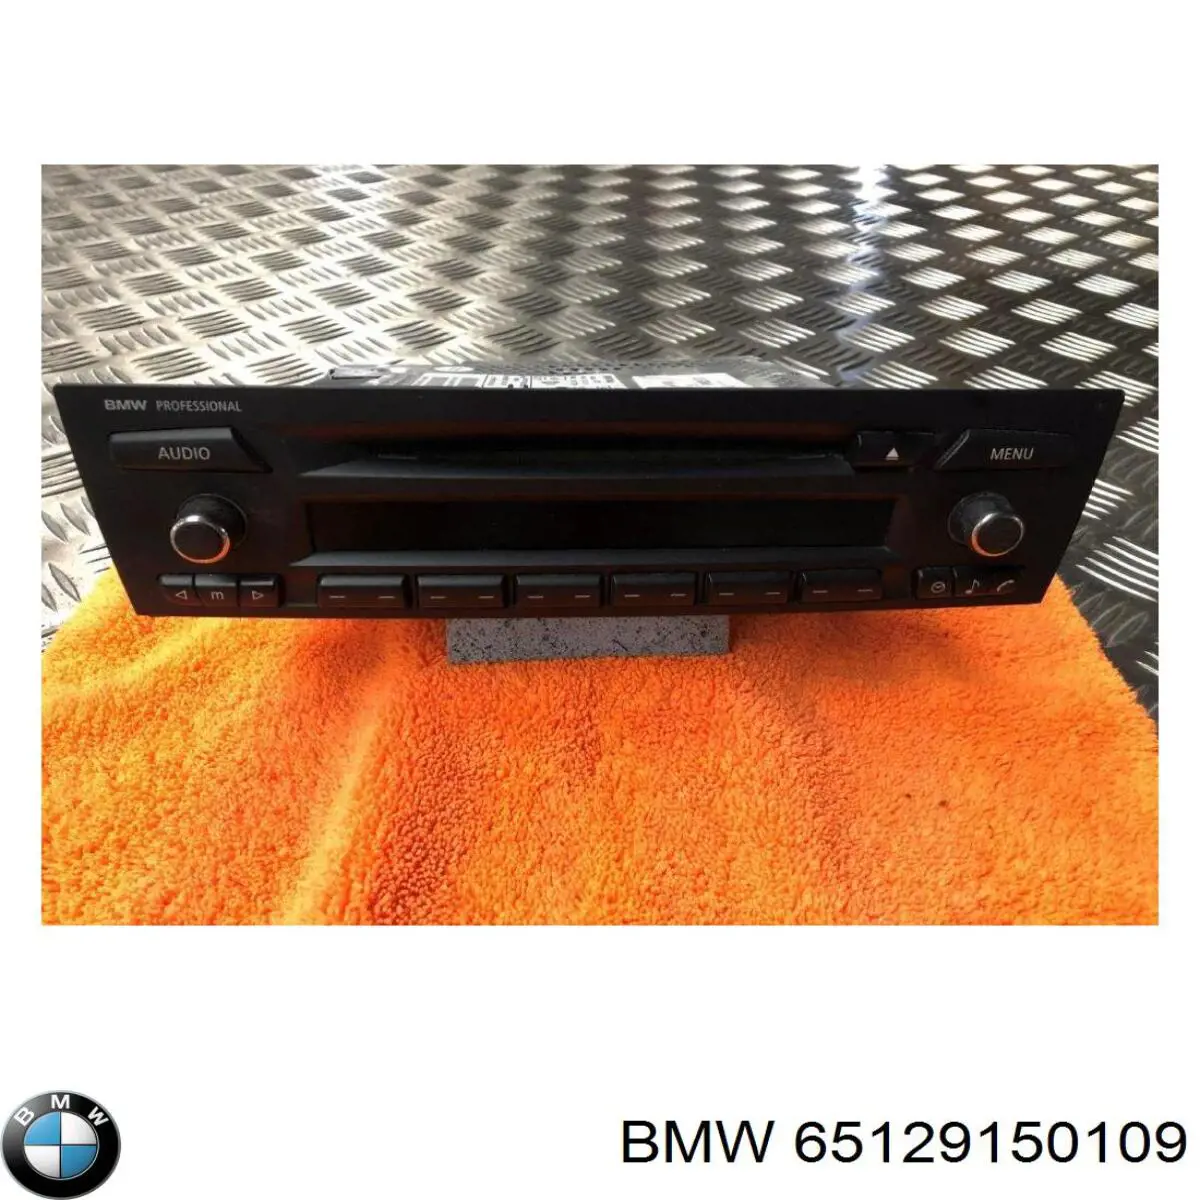 65129144776 BMW radio (radio am/fm)